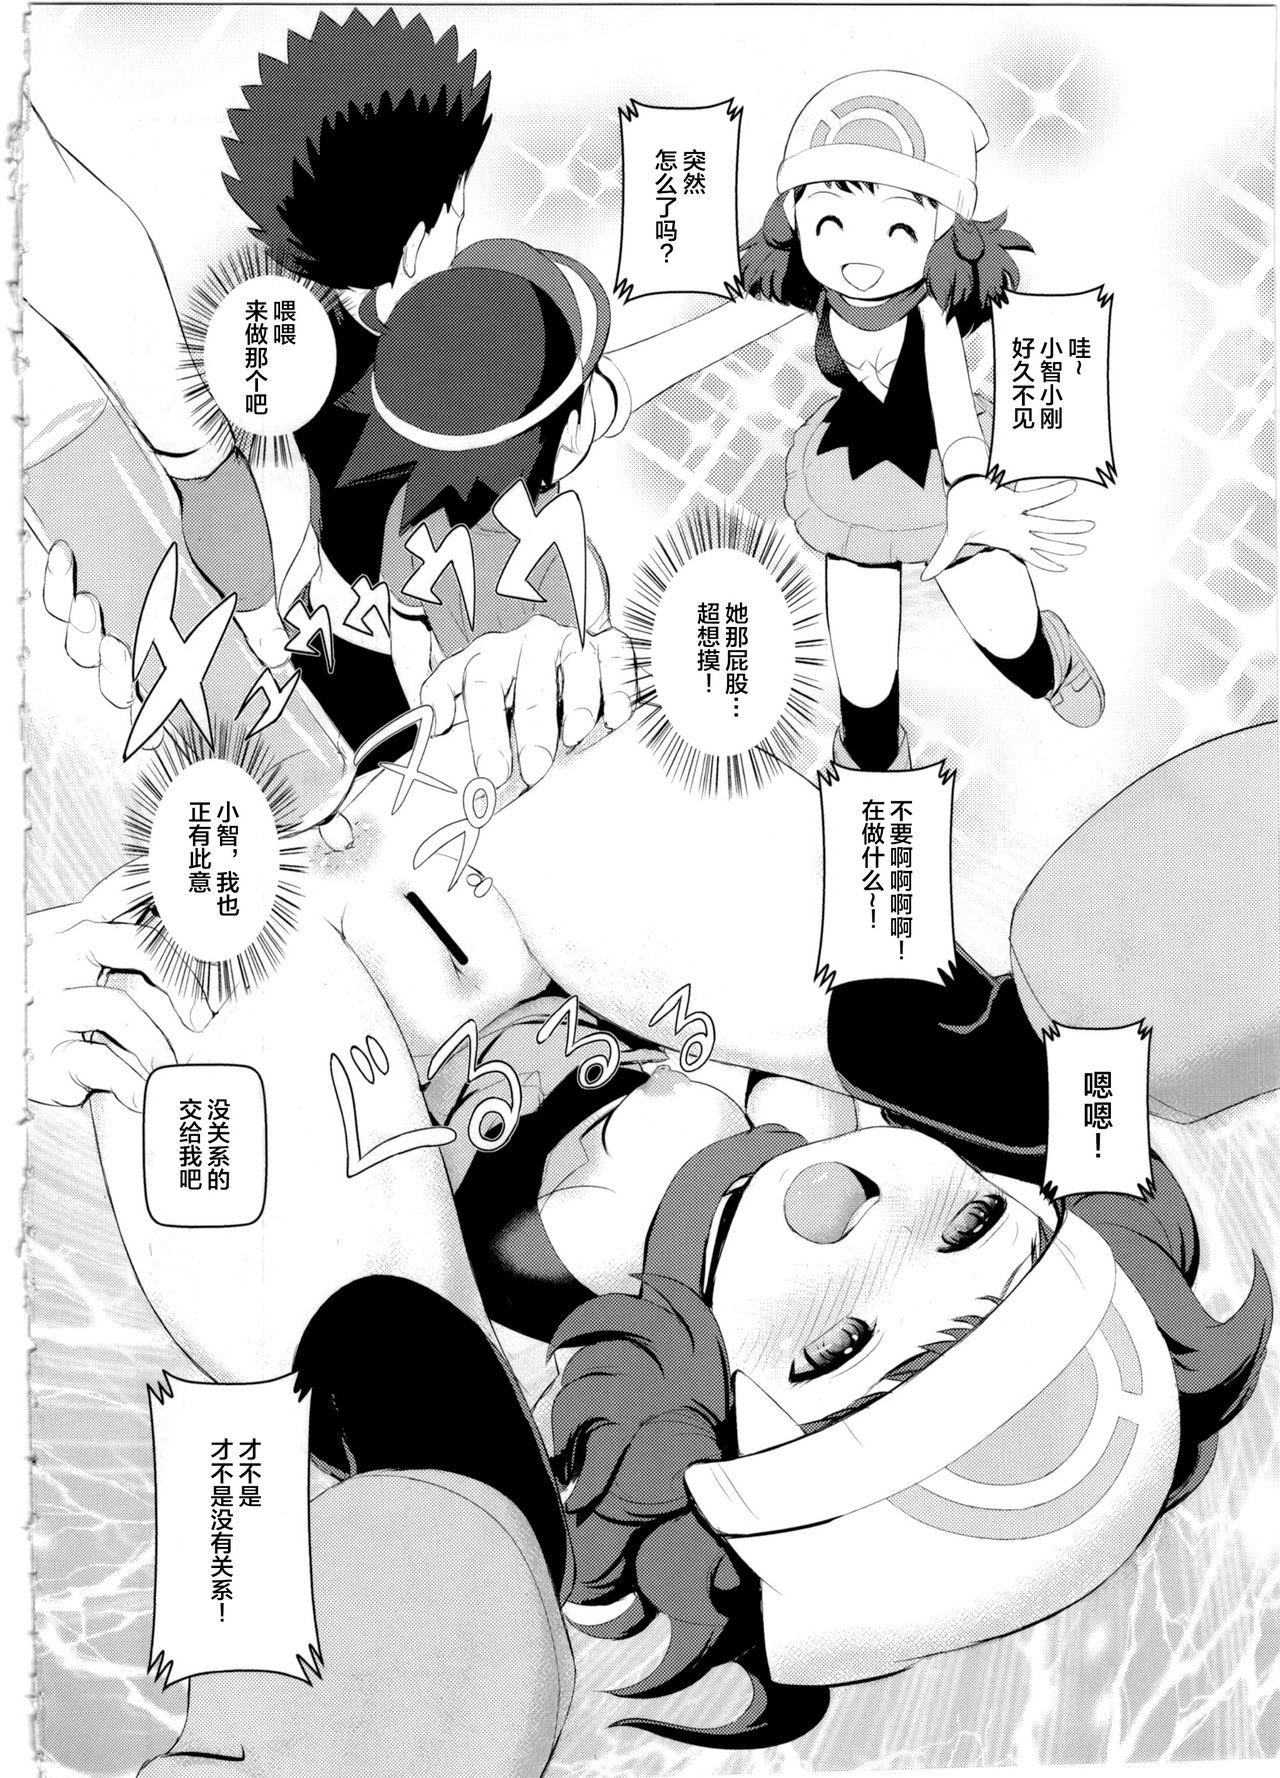  SatoSHI to TakeSHI no Futari wa PuriPuri 2 - Pokemon | pocket monsters HD - Page 4